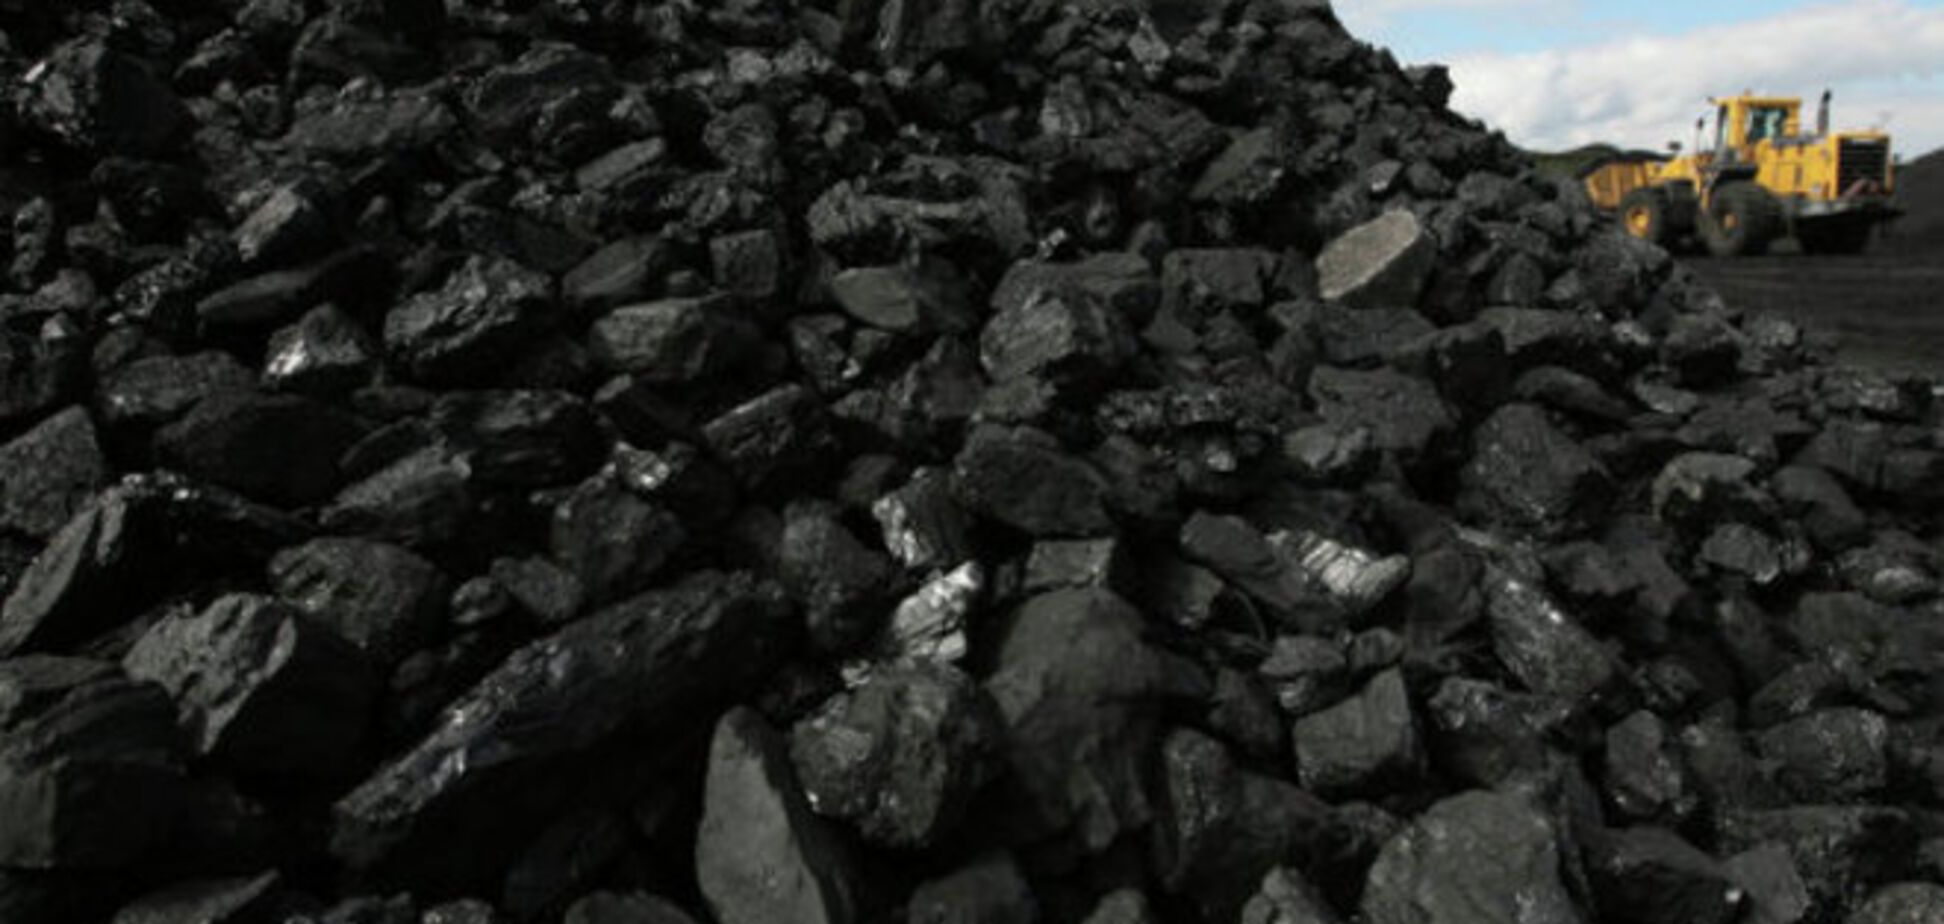 ГПУ: закупка африканского угля - преступление